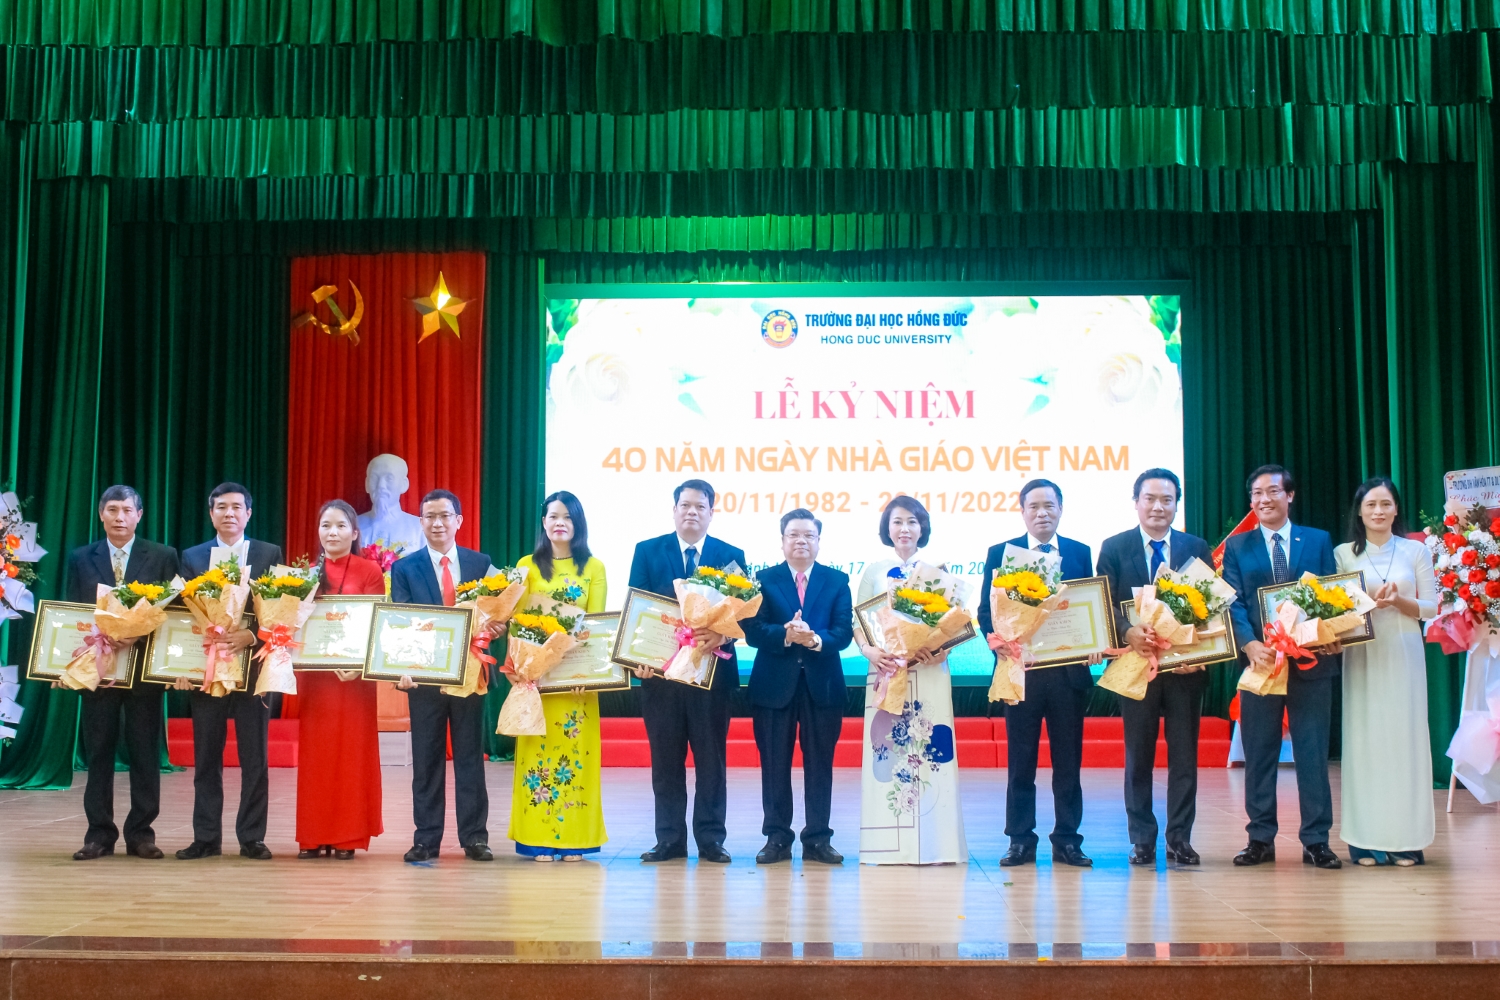 Trường Đại học Hồng Đức long trọng tổ chức Lễ kỷ niệm 40 năm ngày Nhà giáo Việt Nam (20/11/1982 – 20/11/2022).